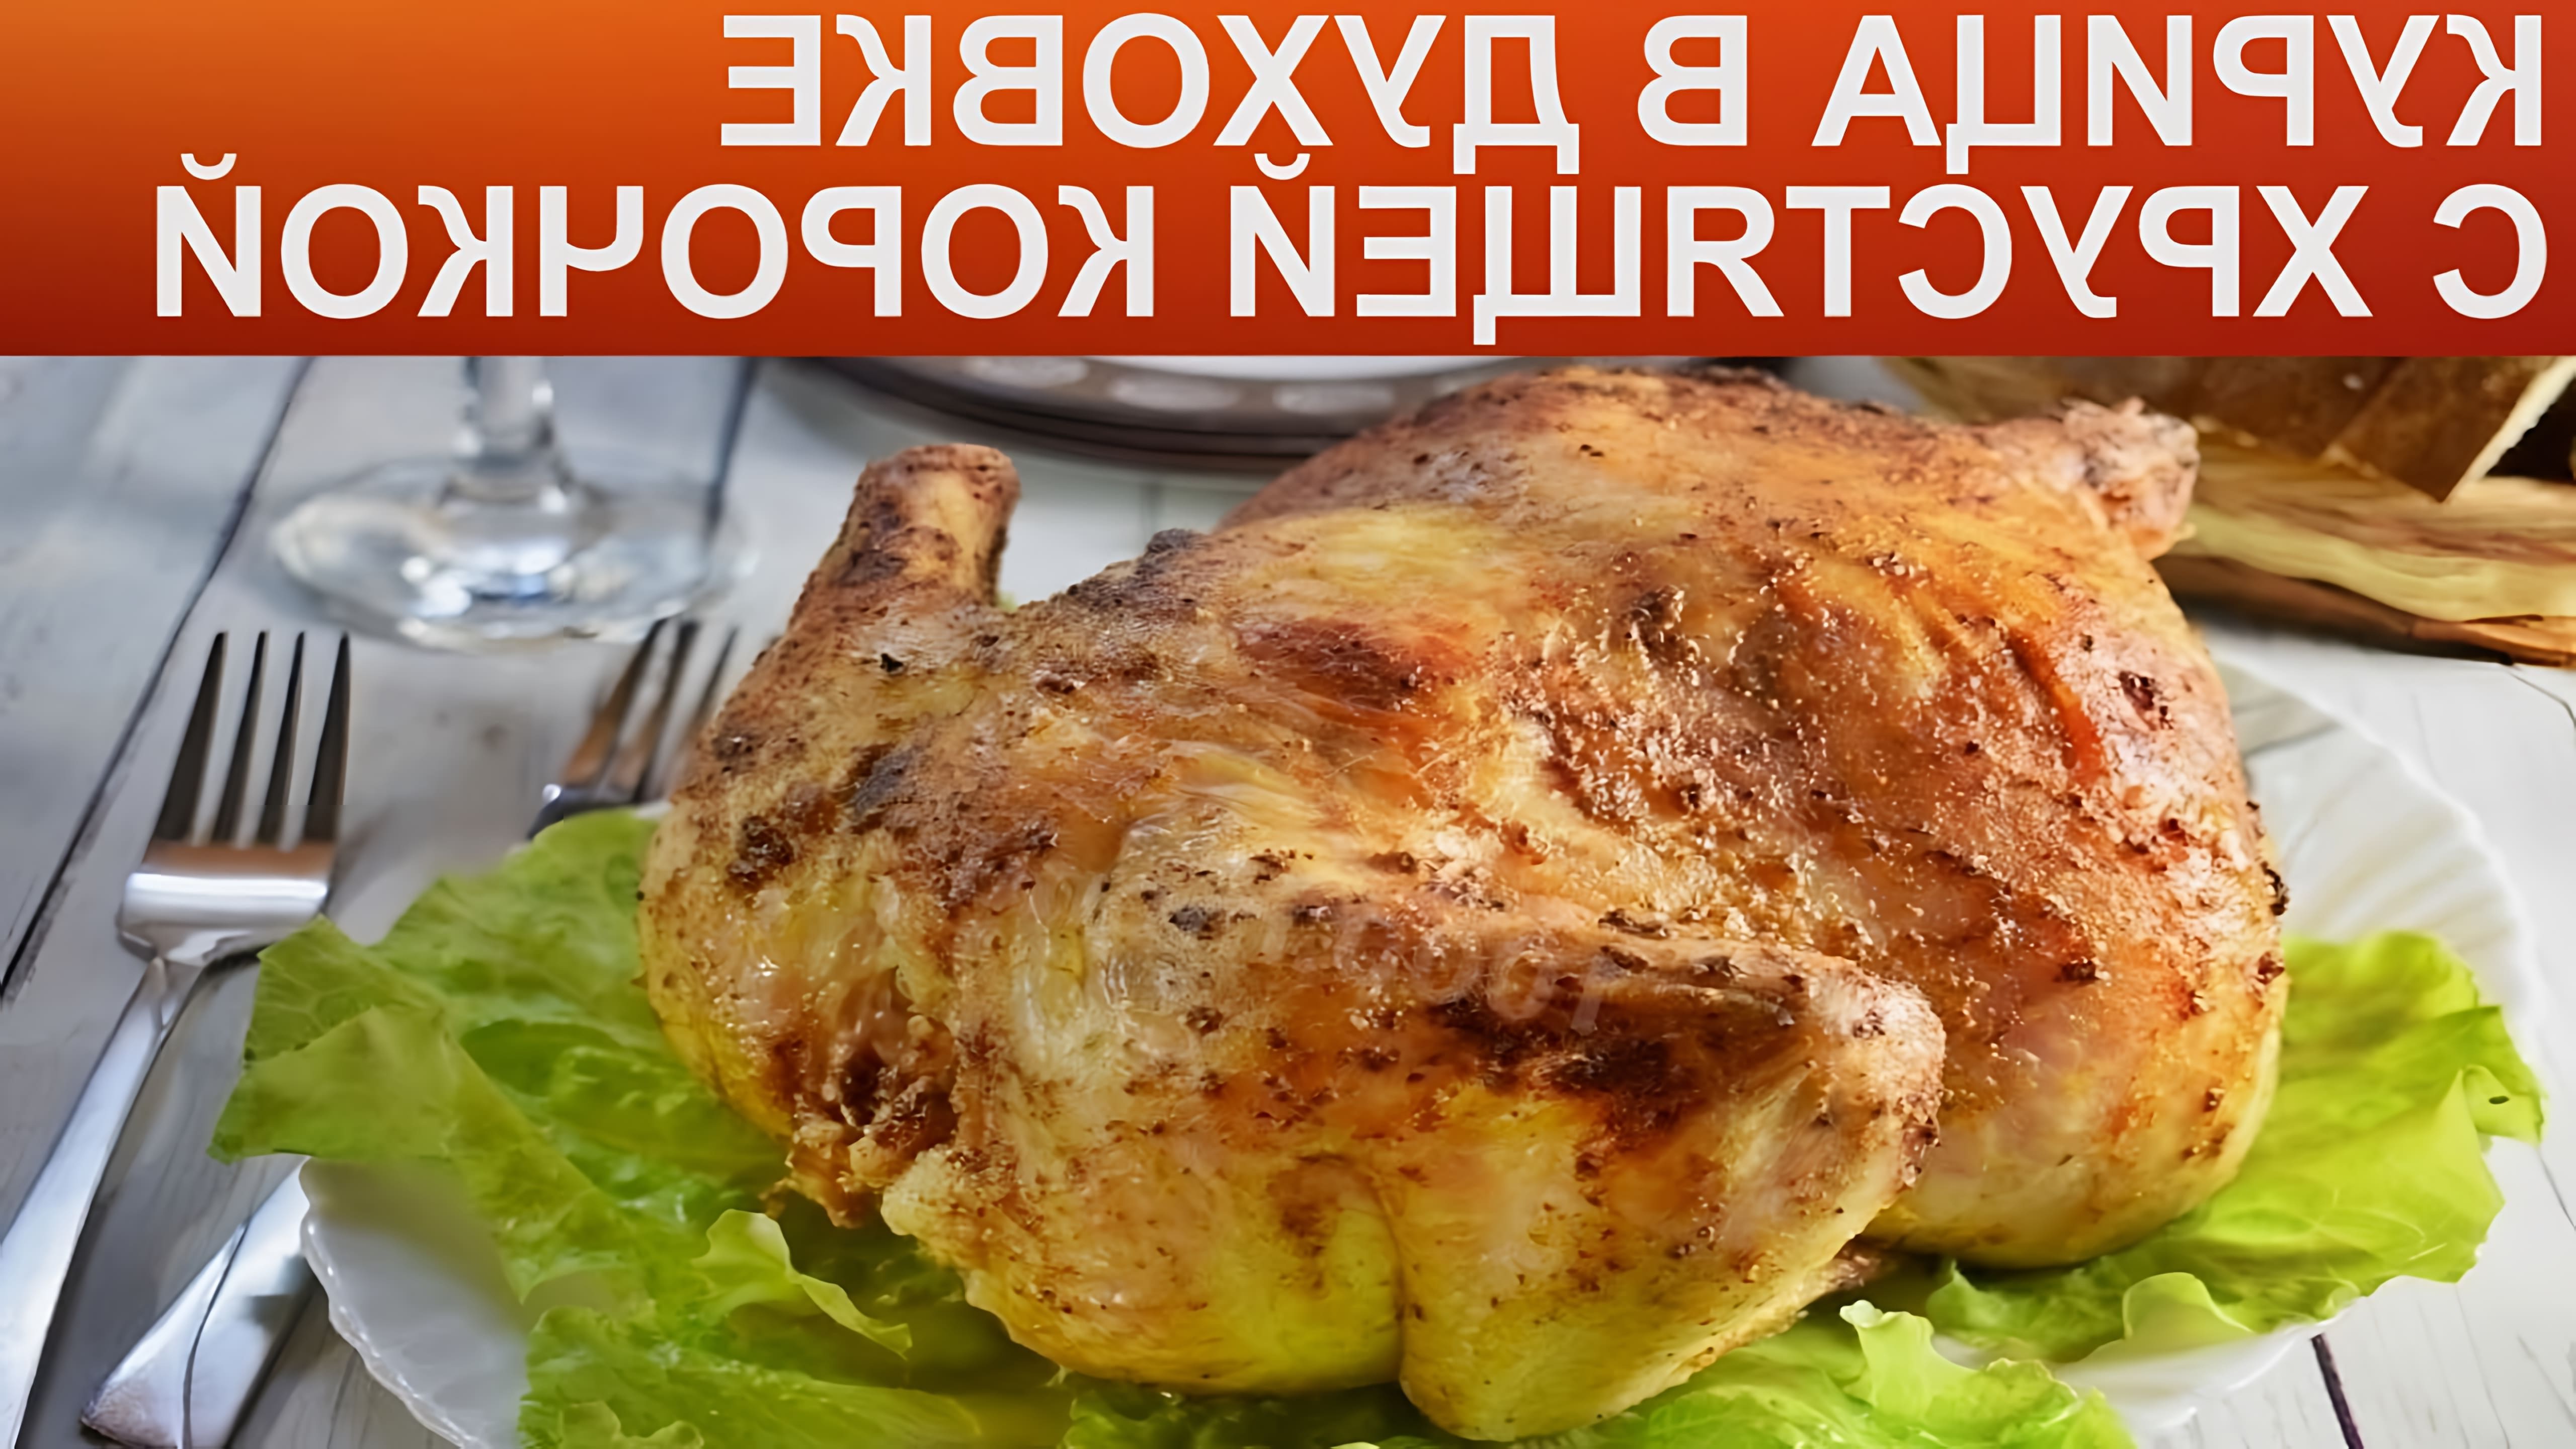 Очень вкусная курочка с аппетитной корочкой! Рецепт приготовления такой курицы хорош тем, что готовится очень просто. 